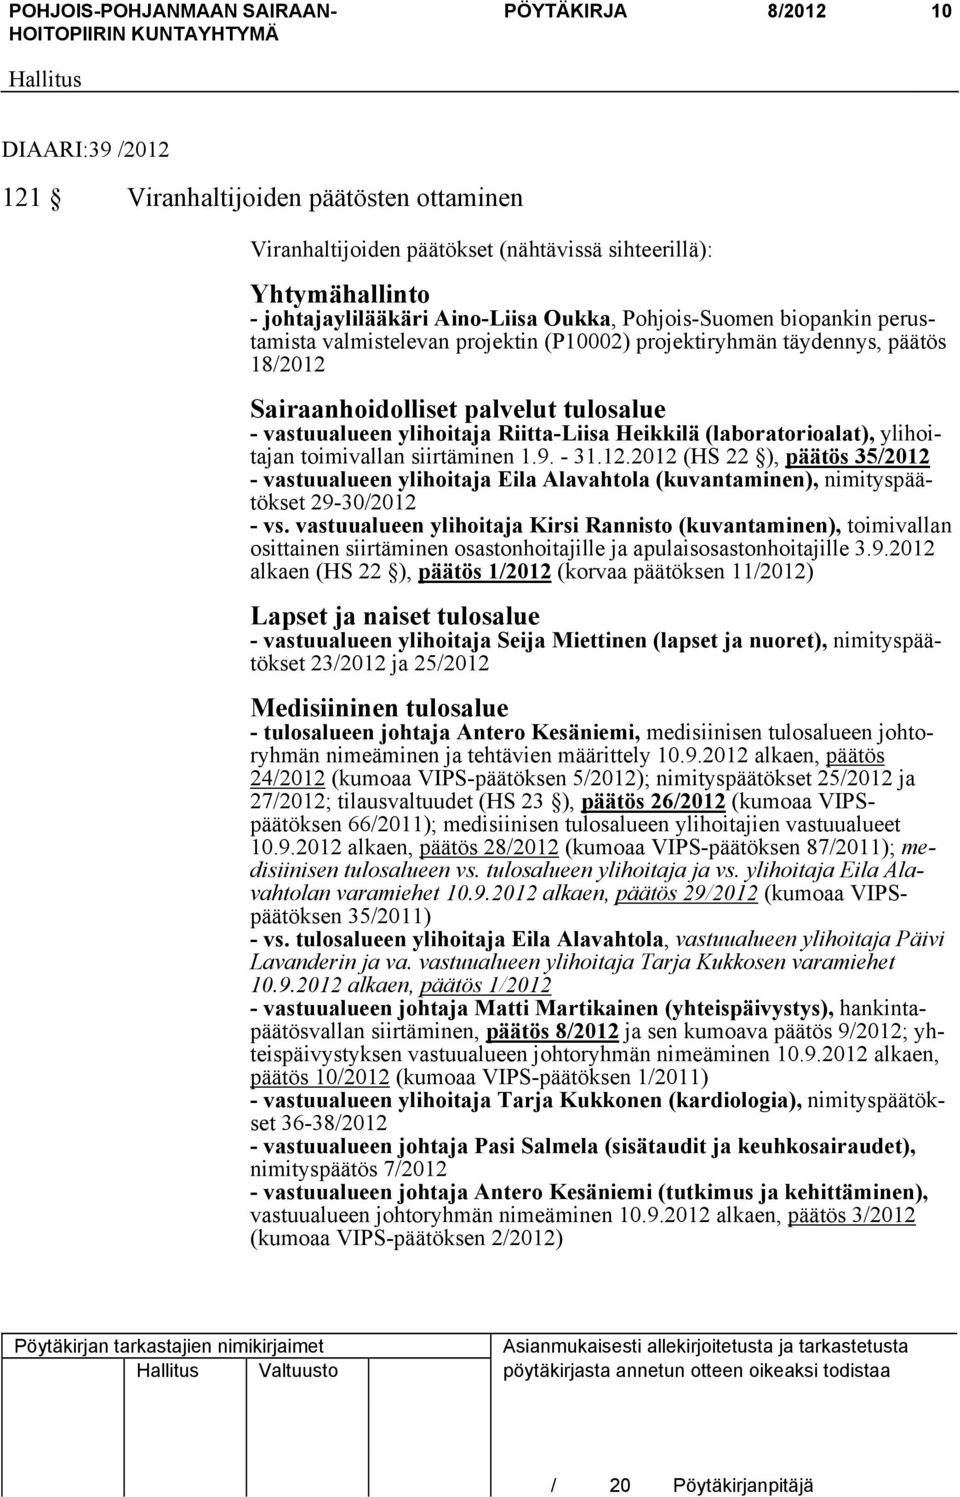 (laboratorioalat), ylihoitajan toimivallan siirtäminen 1.9. - 31.12.2012 (HS 22 ), päätös 35/2012 - vastuualueen ylihoitaja Eila Alavahtola (kuvantaminen), nimityspäätökset 29-30/2012 - vs.